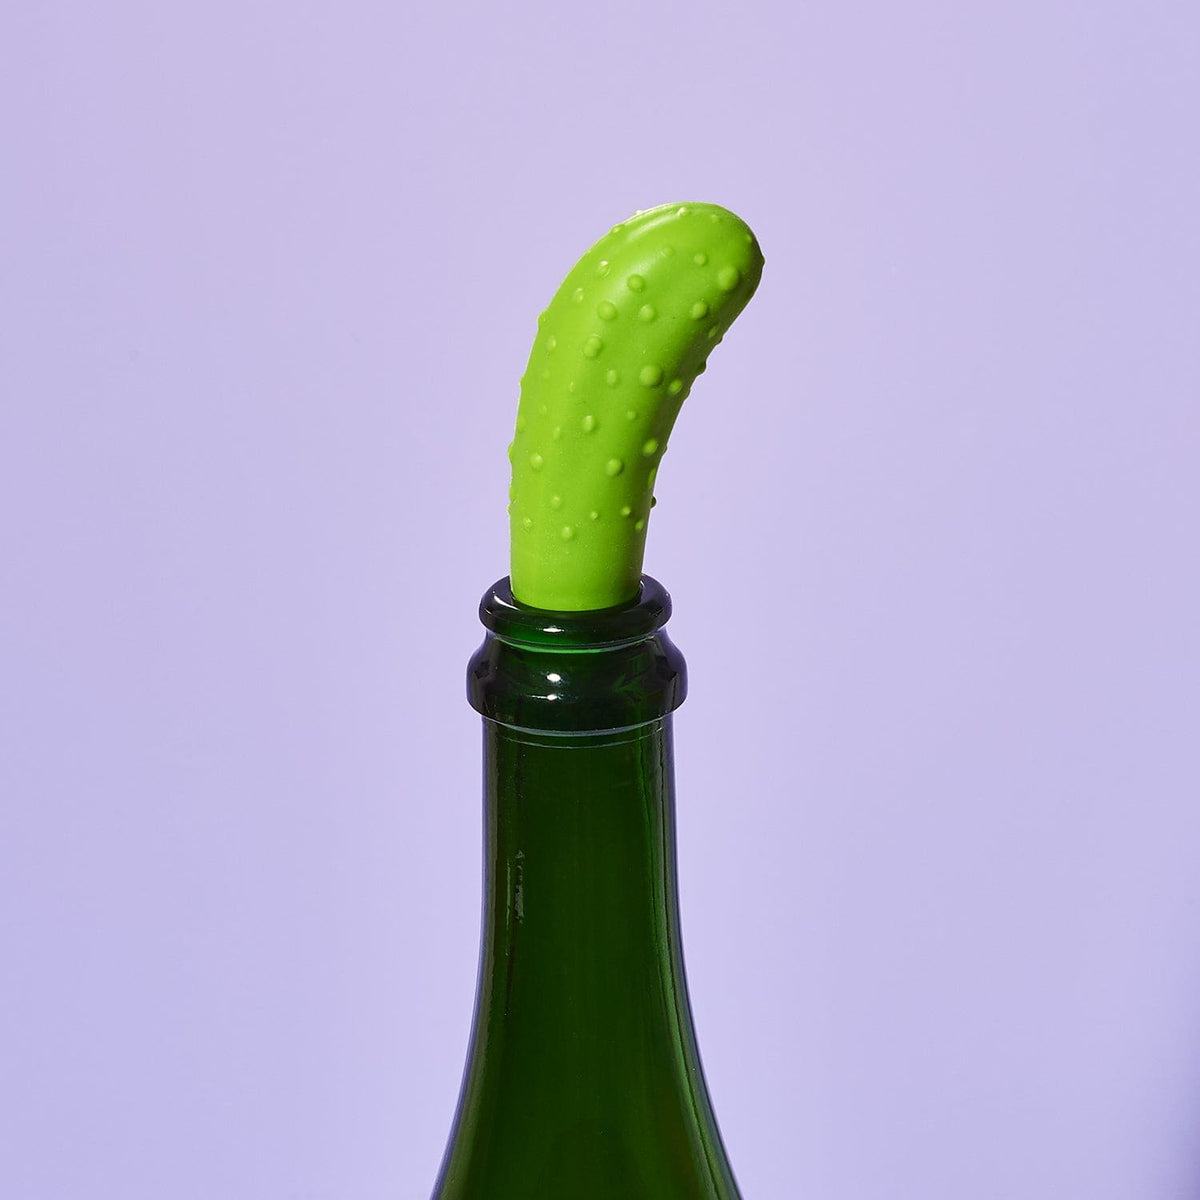 Pickle Bottle Stopper 5272774 0922 - Grabngo2022 - Q322 - 